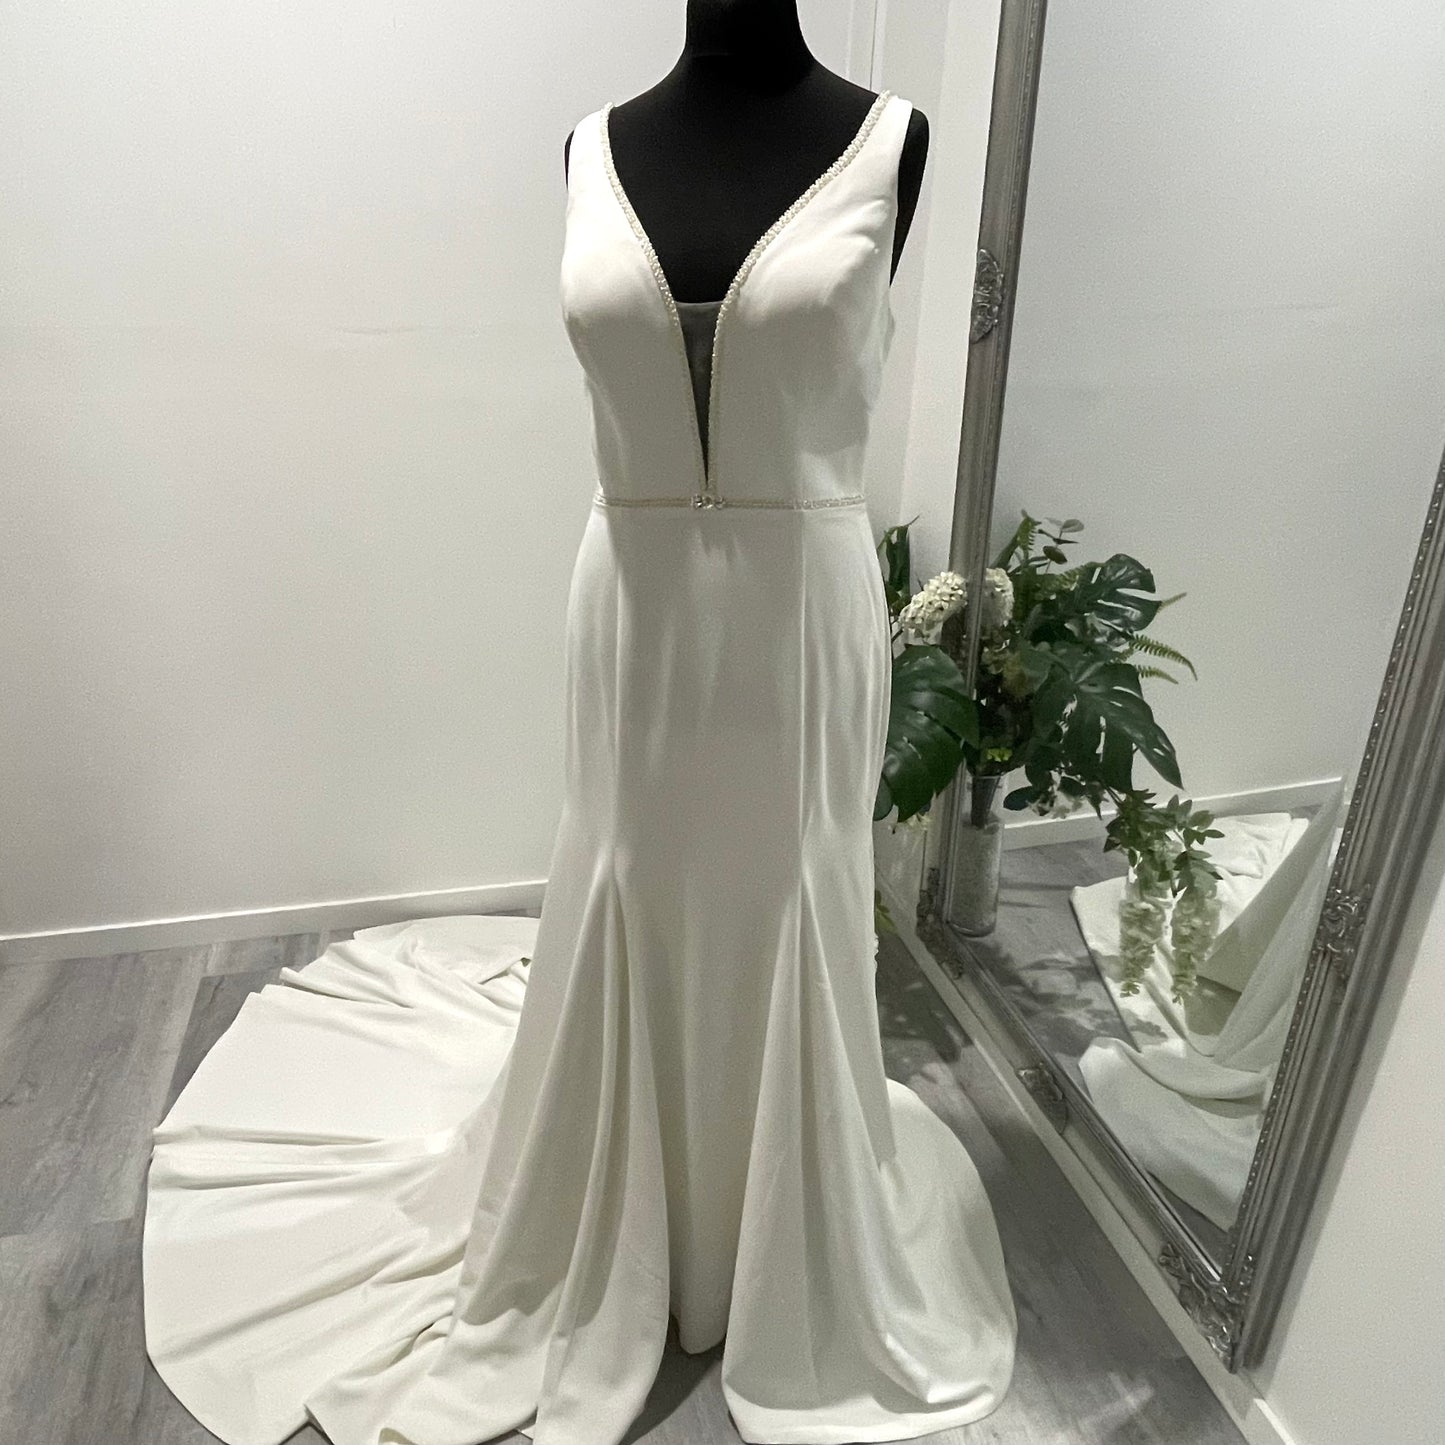 Odette wedding gown